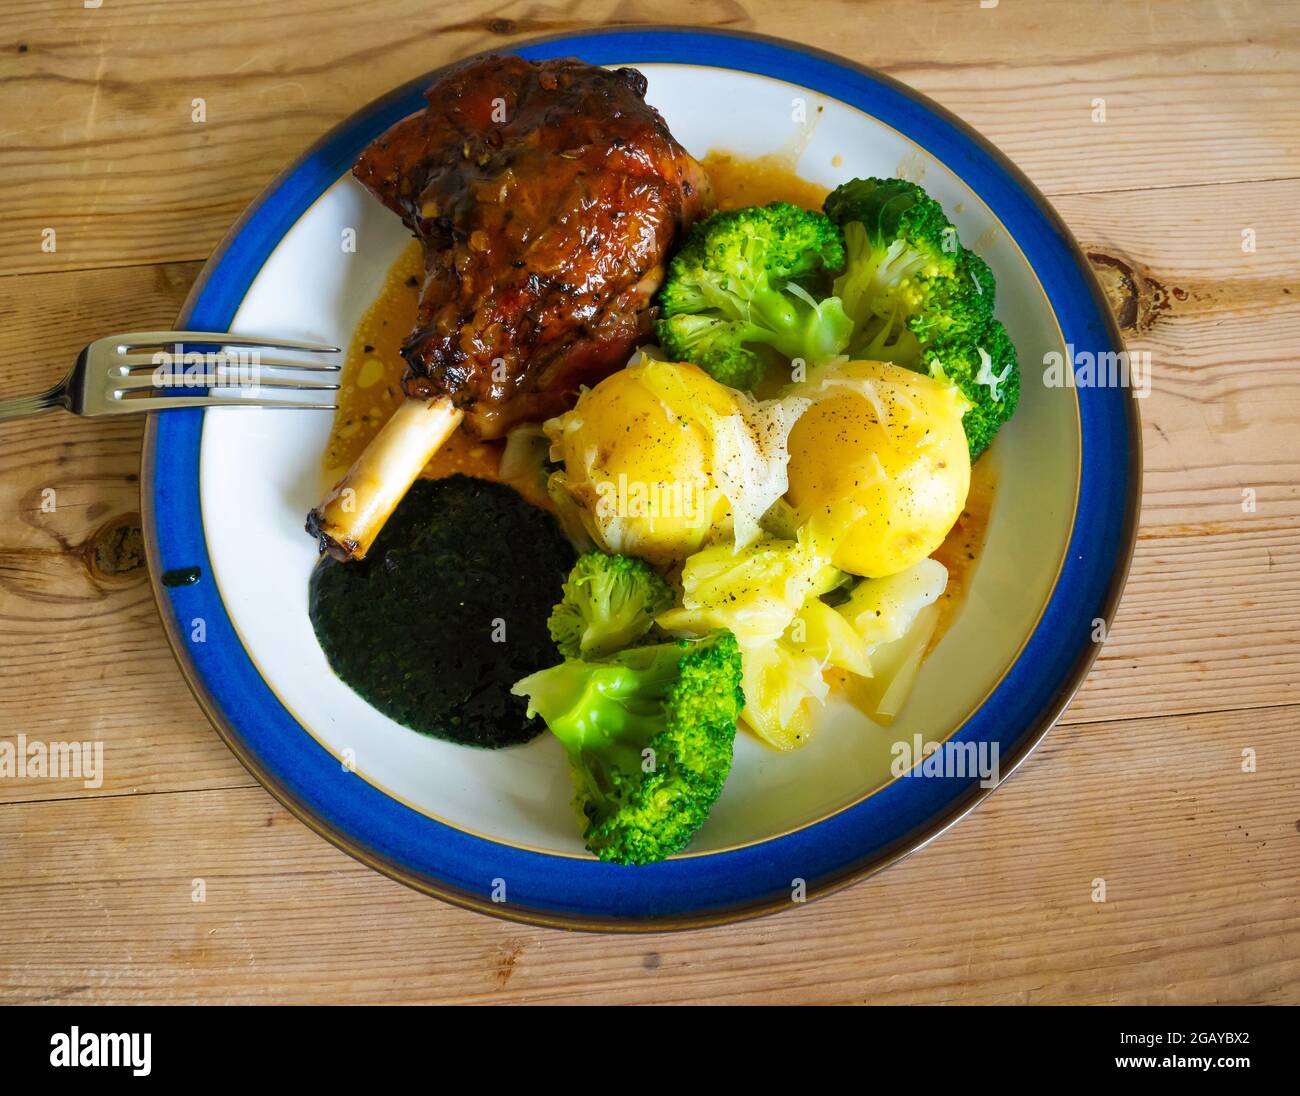 Pranzo inglese cena gamba di agnello bollito di patate novelle fagioli verdi broccoli e sugo su piatto bianco bordato blu su un tavolo di legno Foto Stock